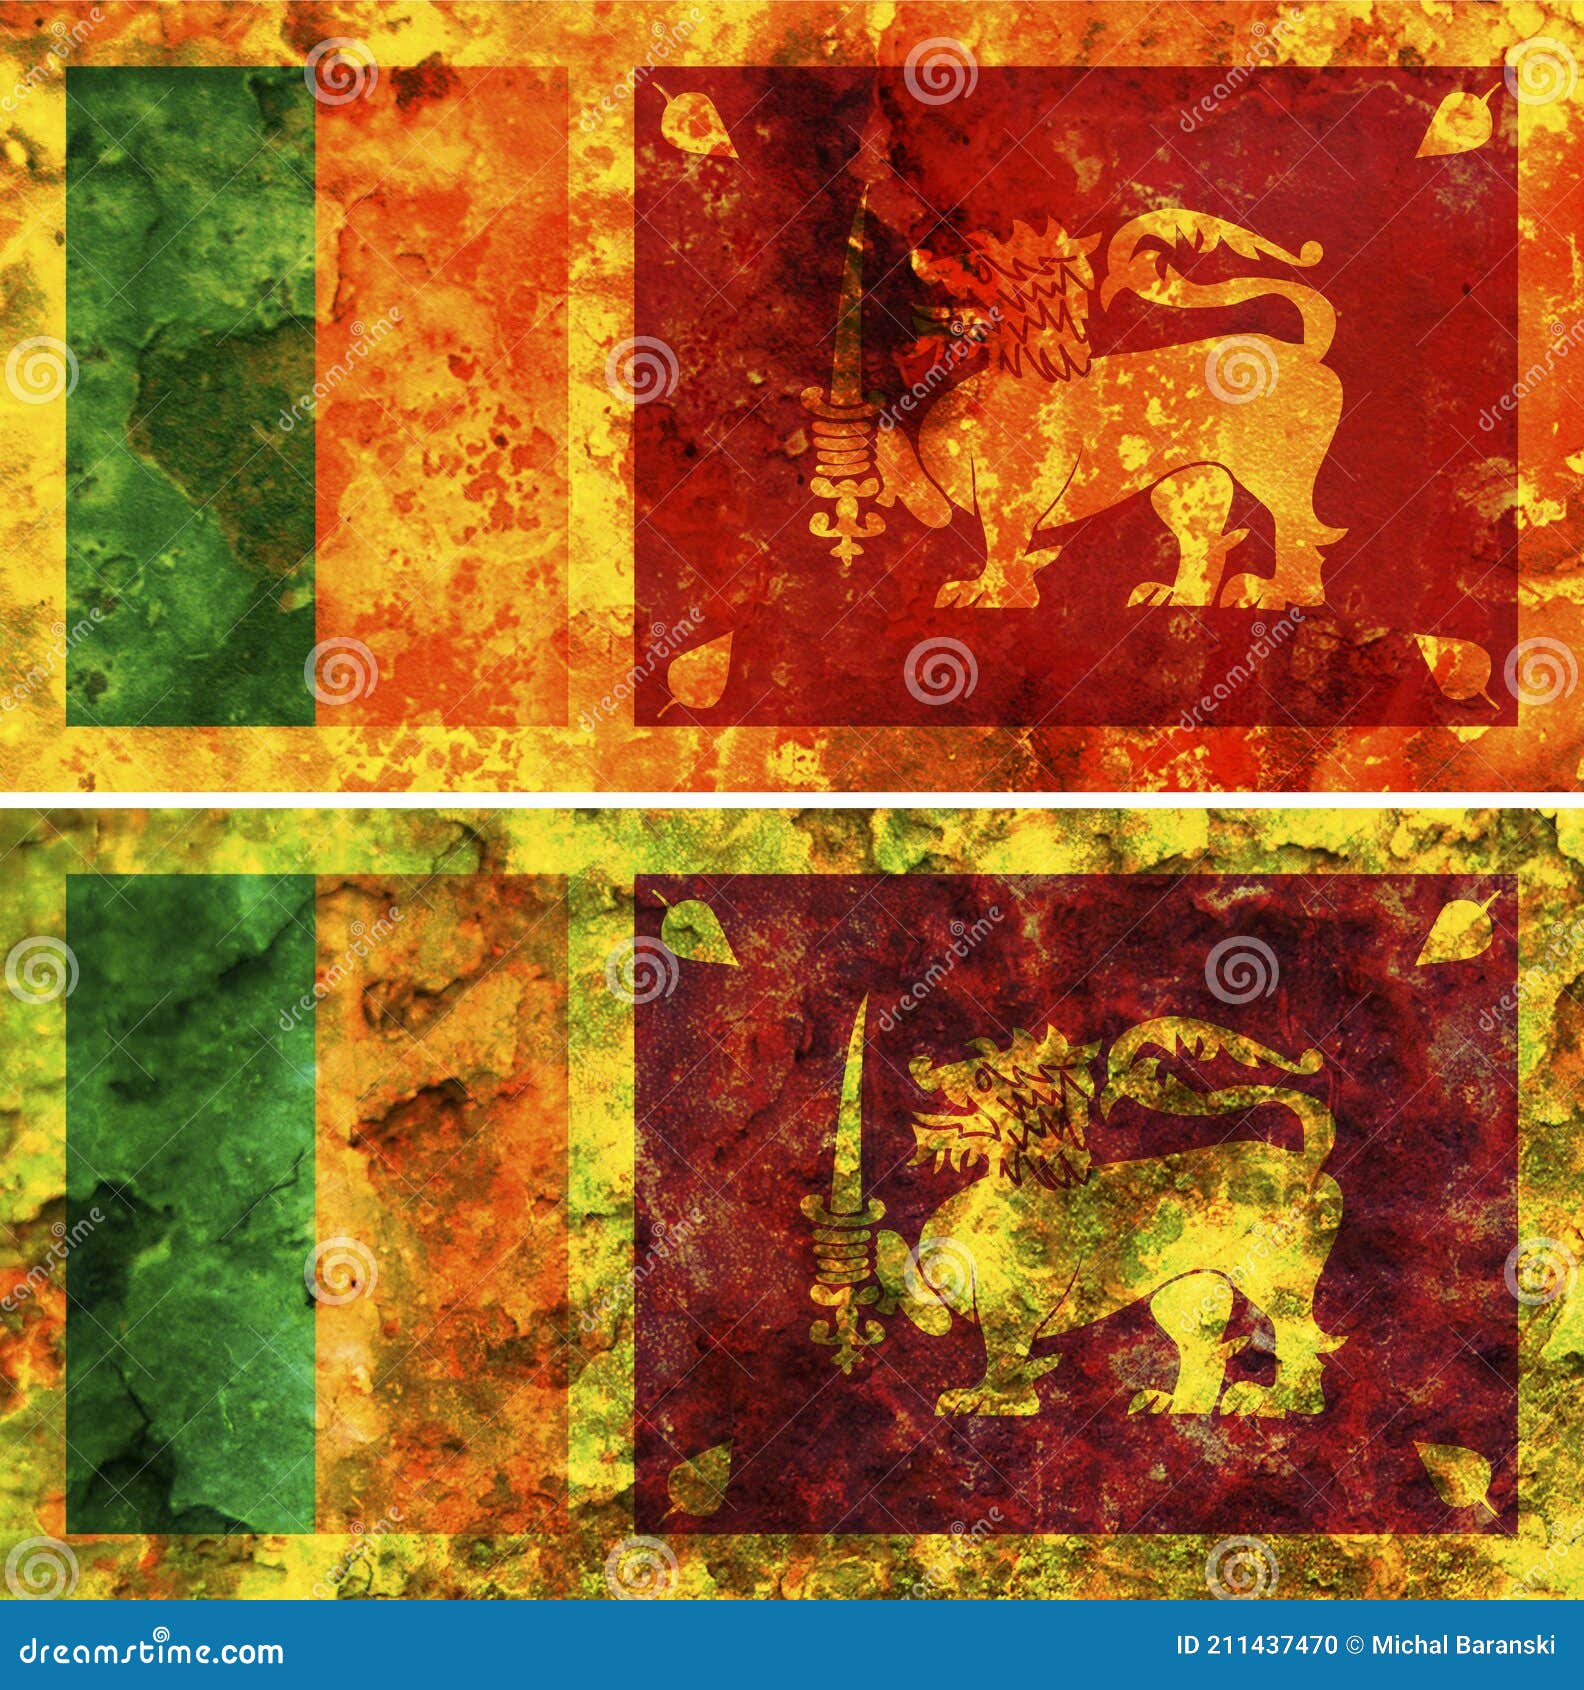 斯里兰卡国旗. 织物表面的斯里兰卡旗帜. 织物纹理 库存照片. 图片 包括有 颜色, 框架, 现代, 国籍 - 248221052